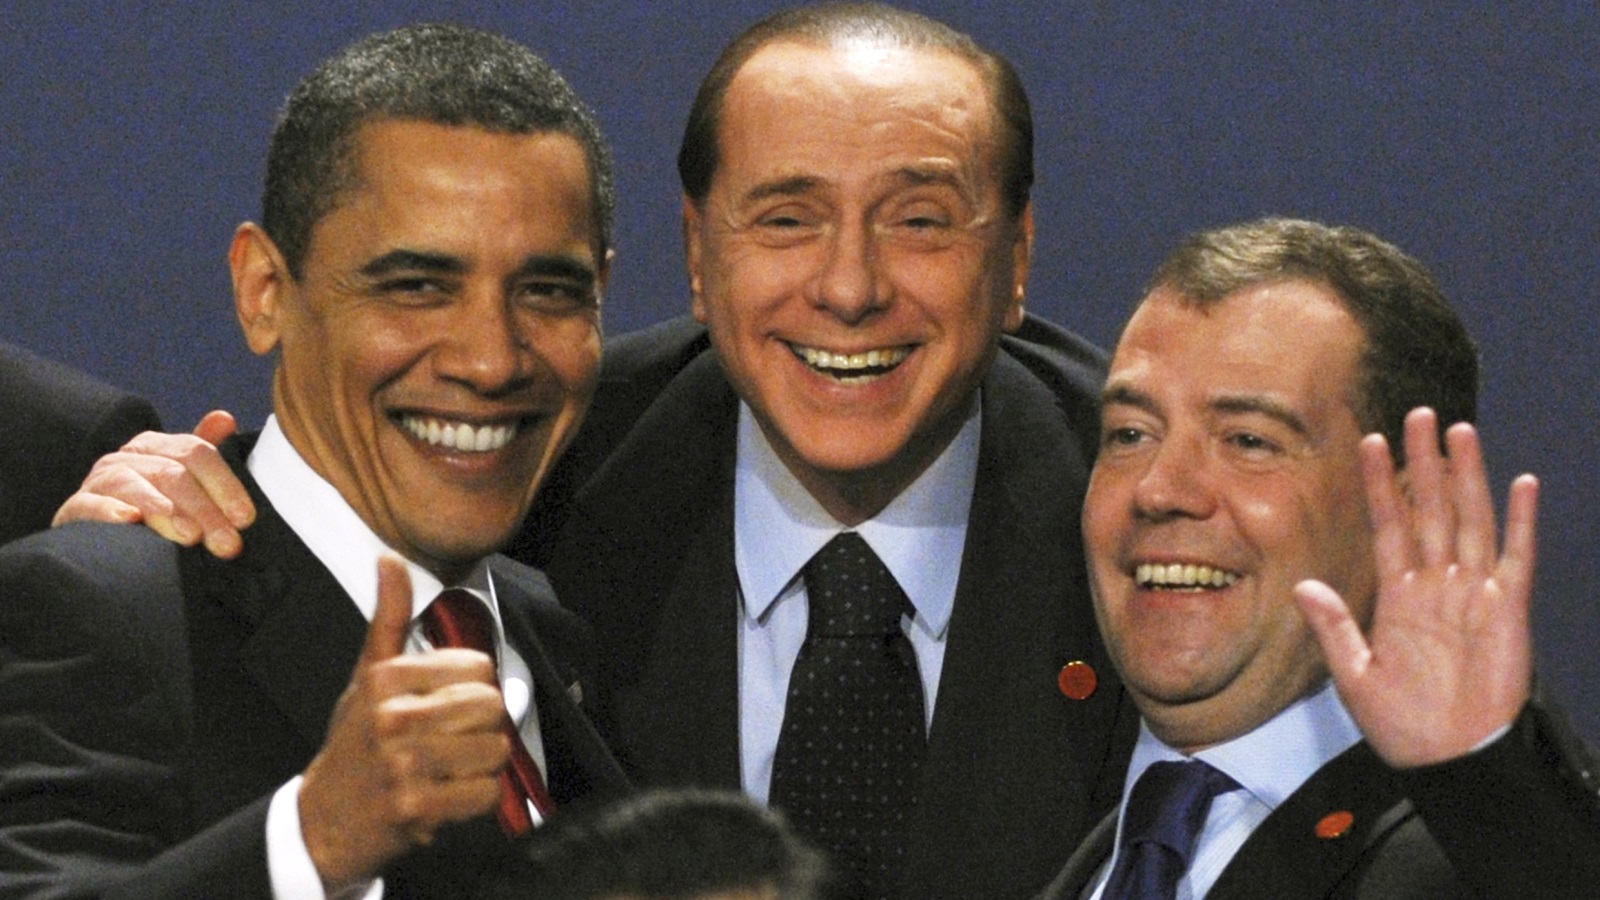 قبل القمة الأميركية الروسية الأولى 2009، شدّد ديمتري ميدفيديف على الحاجة إلى المساواة والمنفعة المتبادلة بين القوتين العظميين